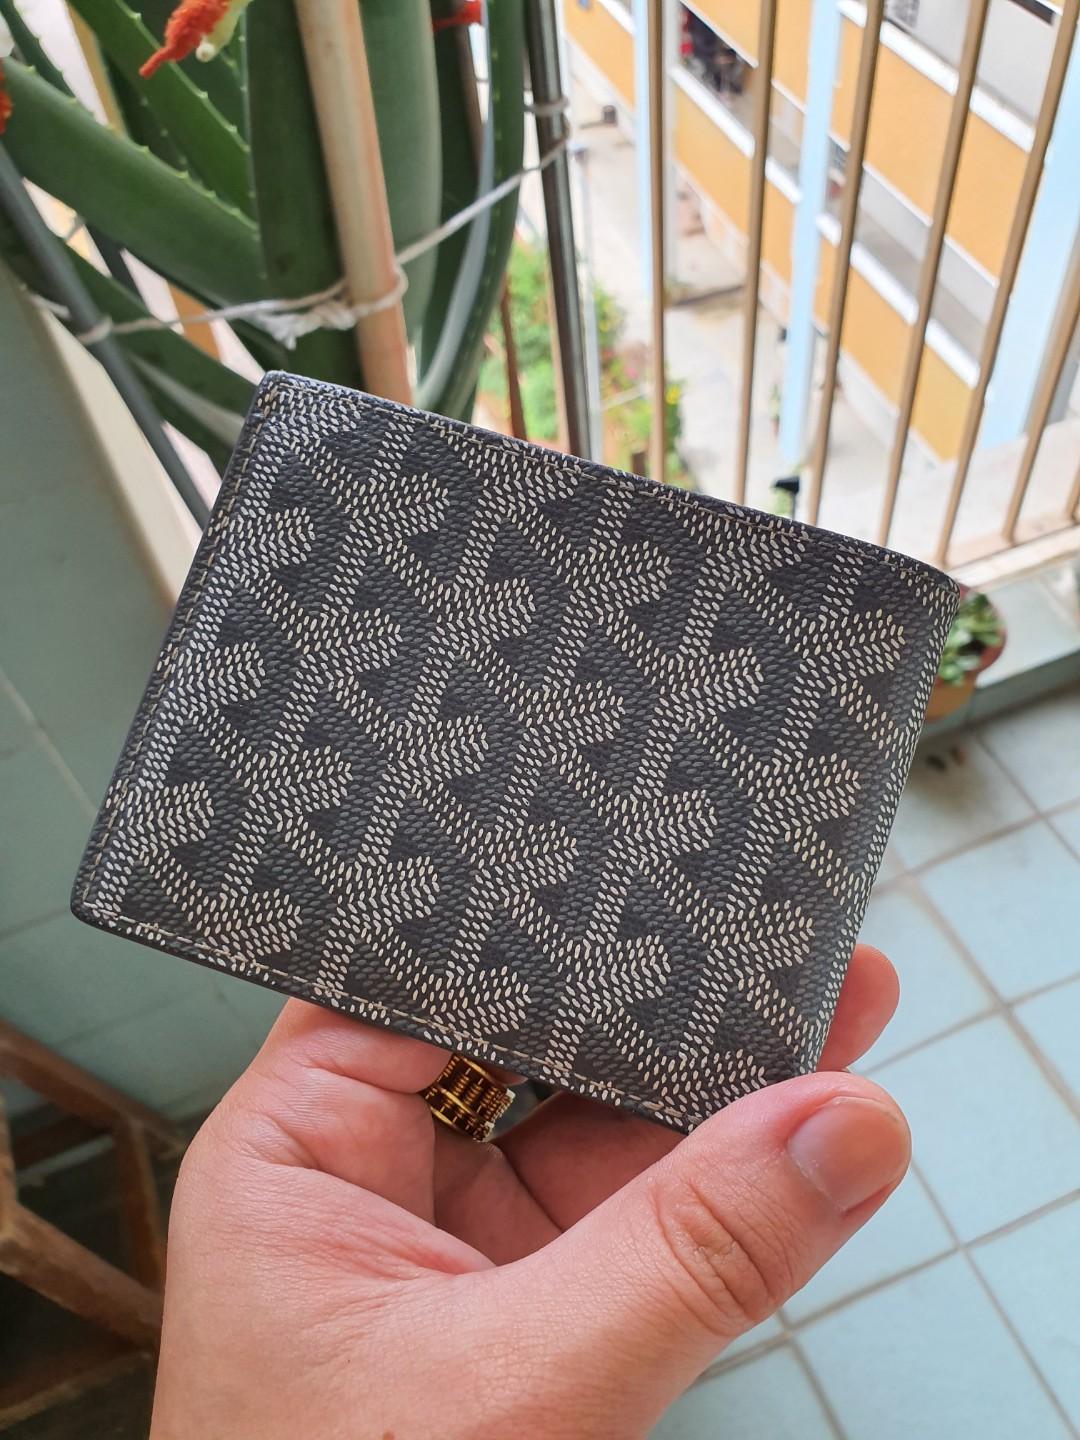 Goyard wallet in seasonal gray colour, Luxury, Bags & Wallets on